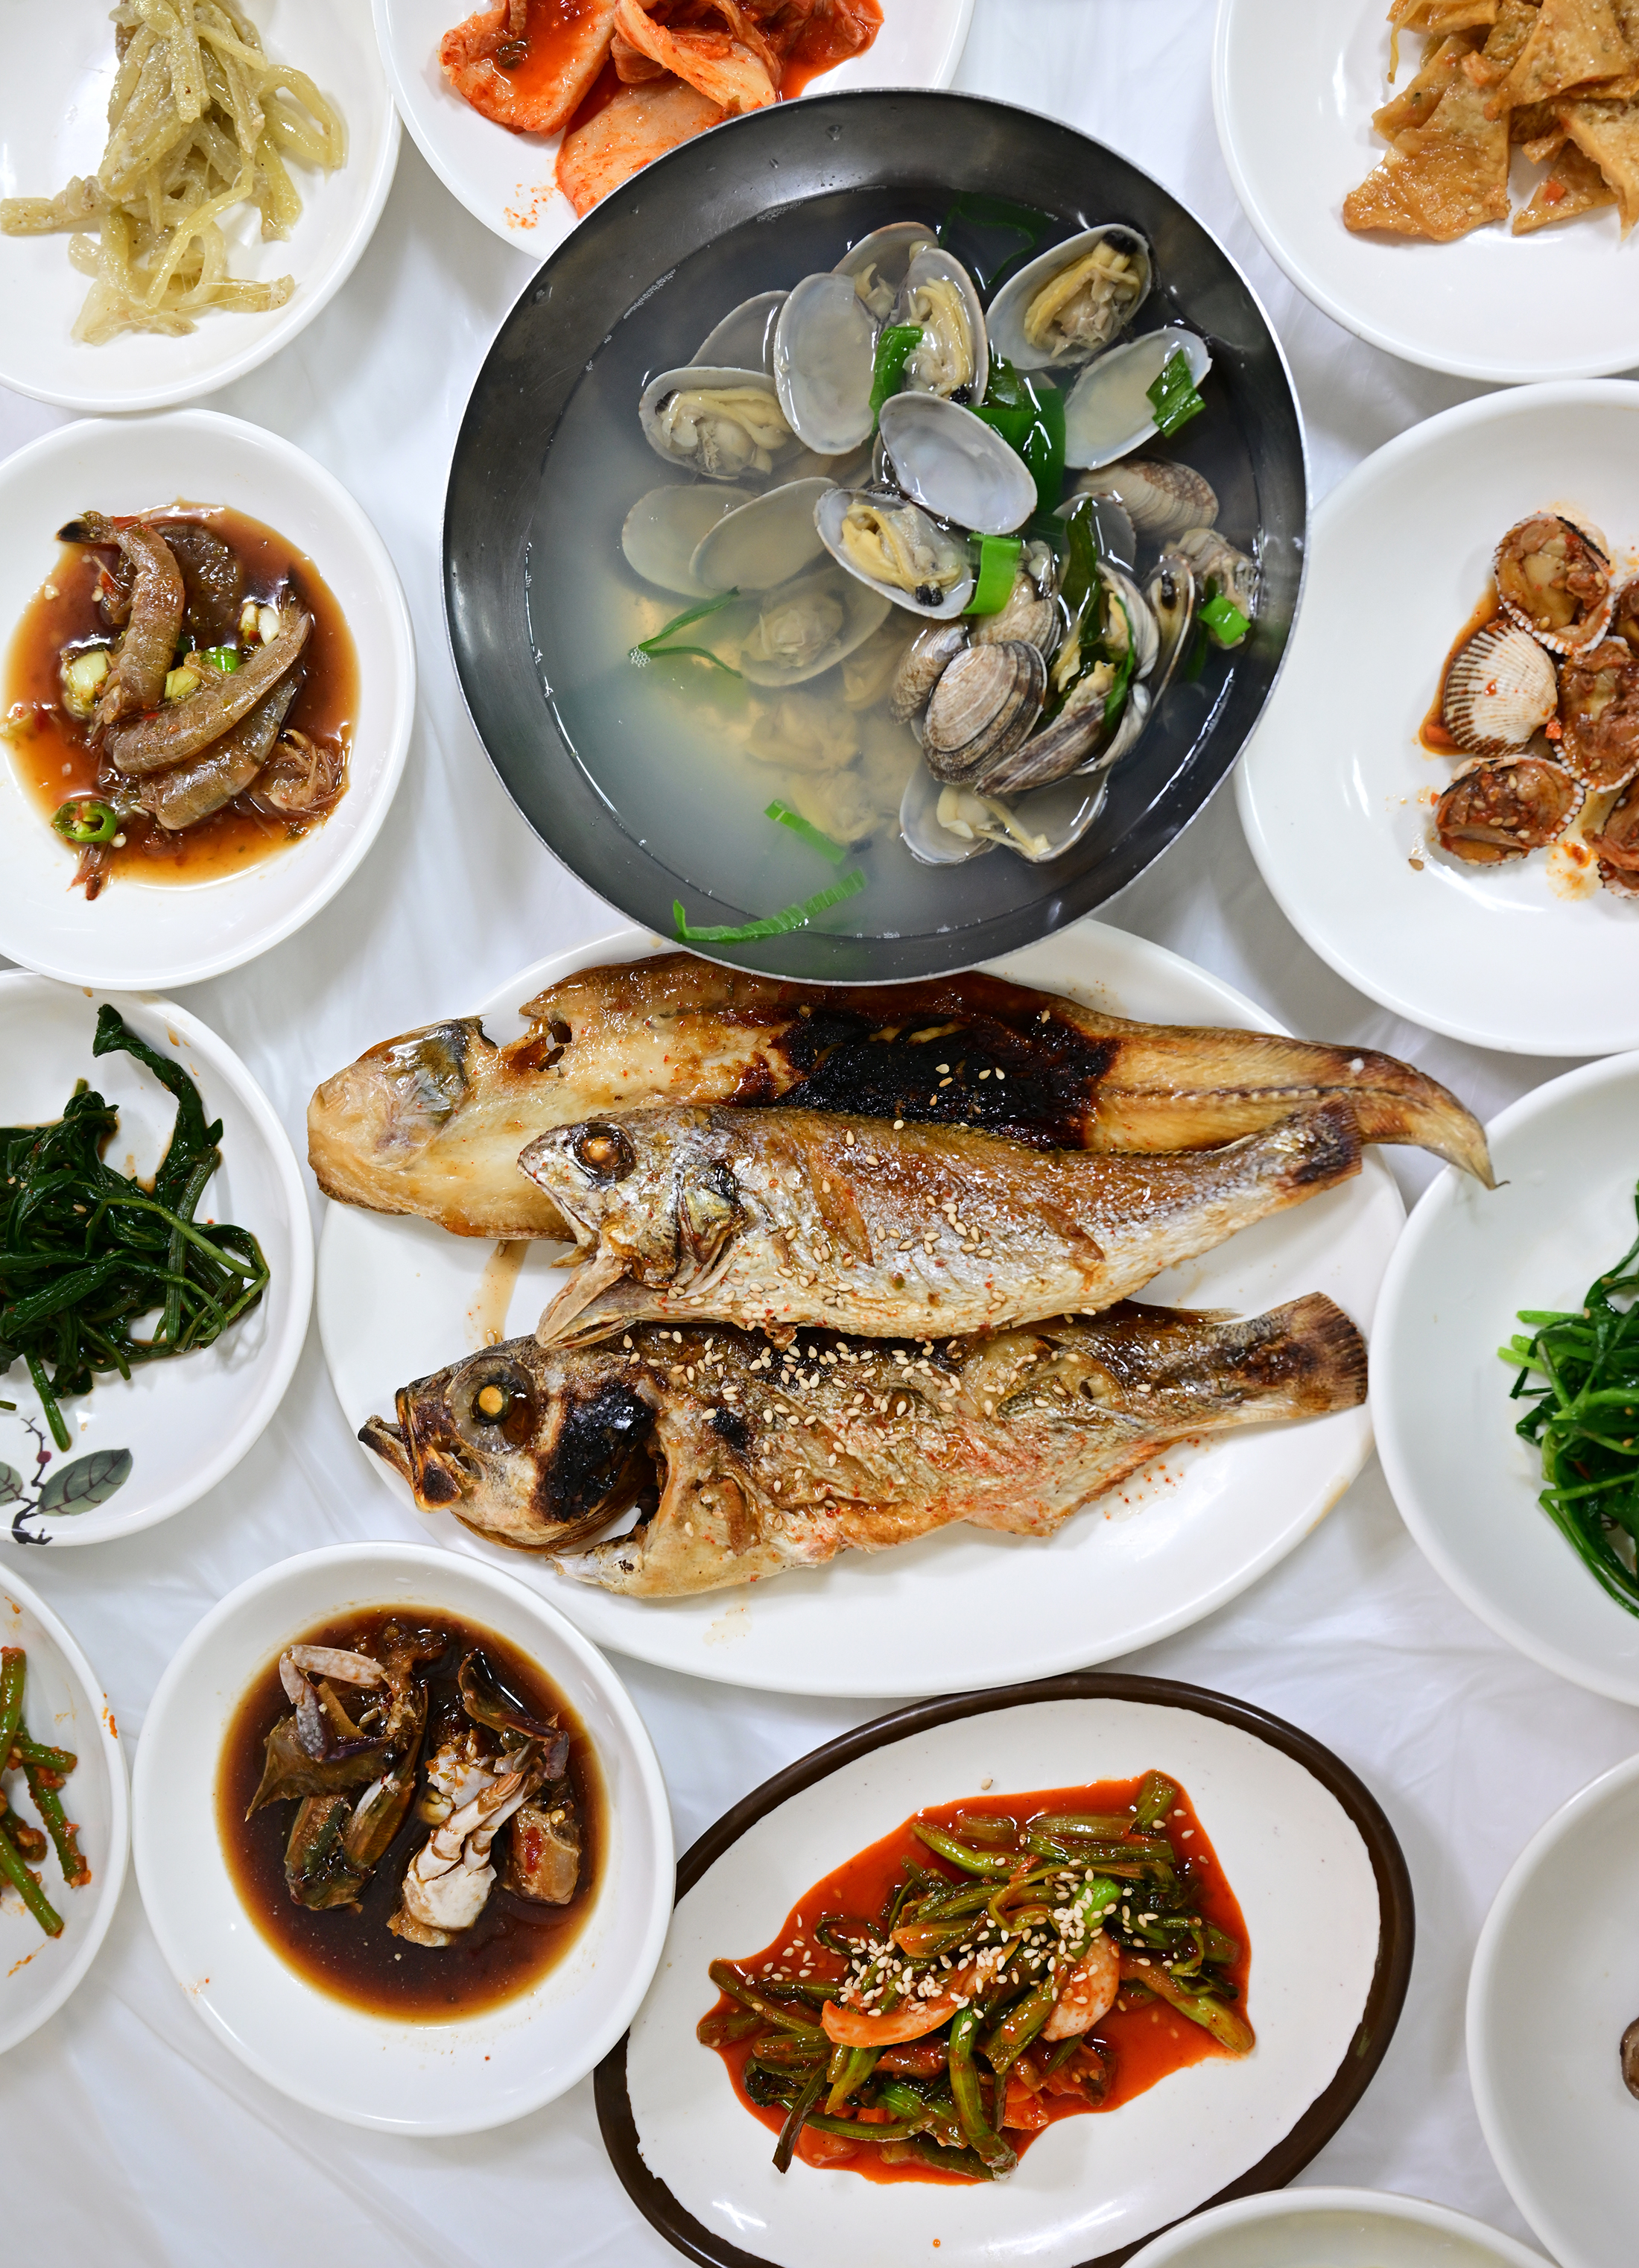 값싸고 푸짐한 ‘정다운식당’ 생선구이 백반. 녹동항에 있다.